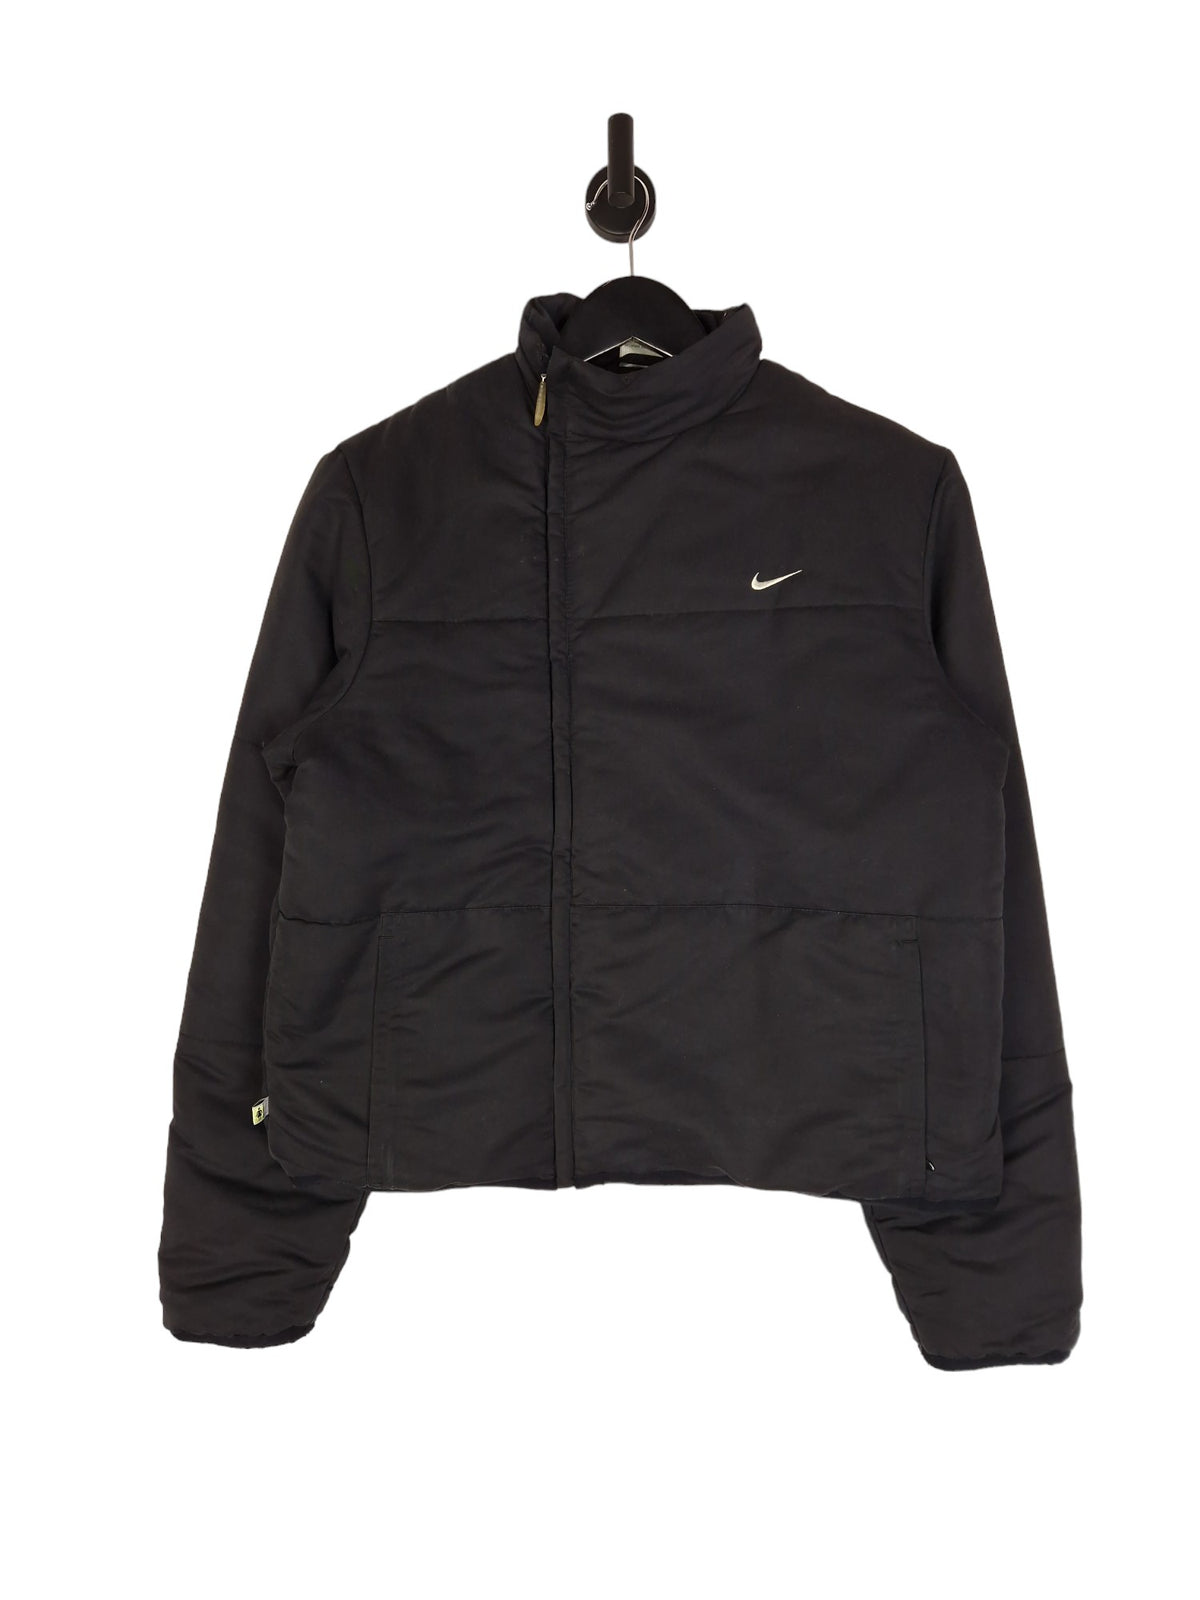 Y2K Nike Puffer Jacket - Size Large